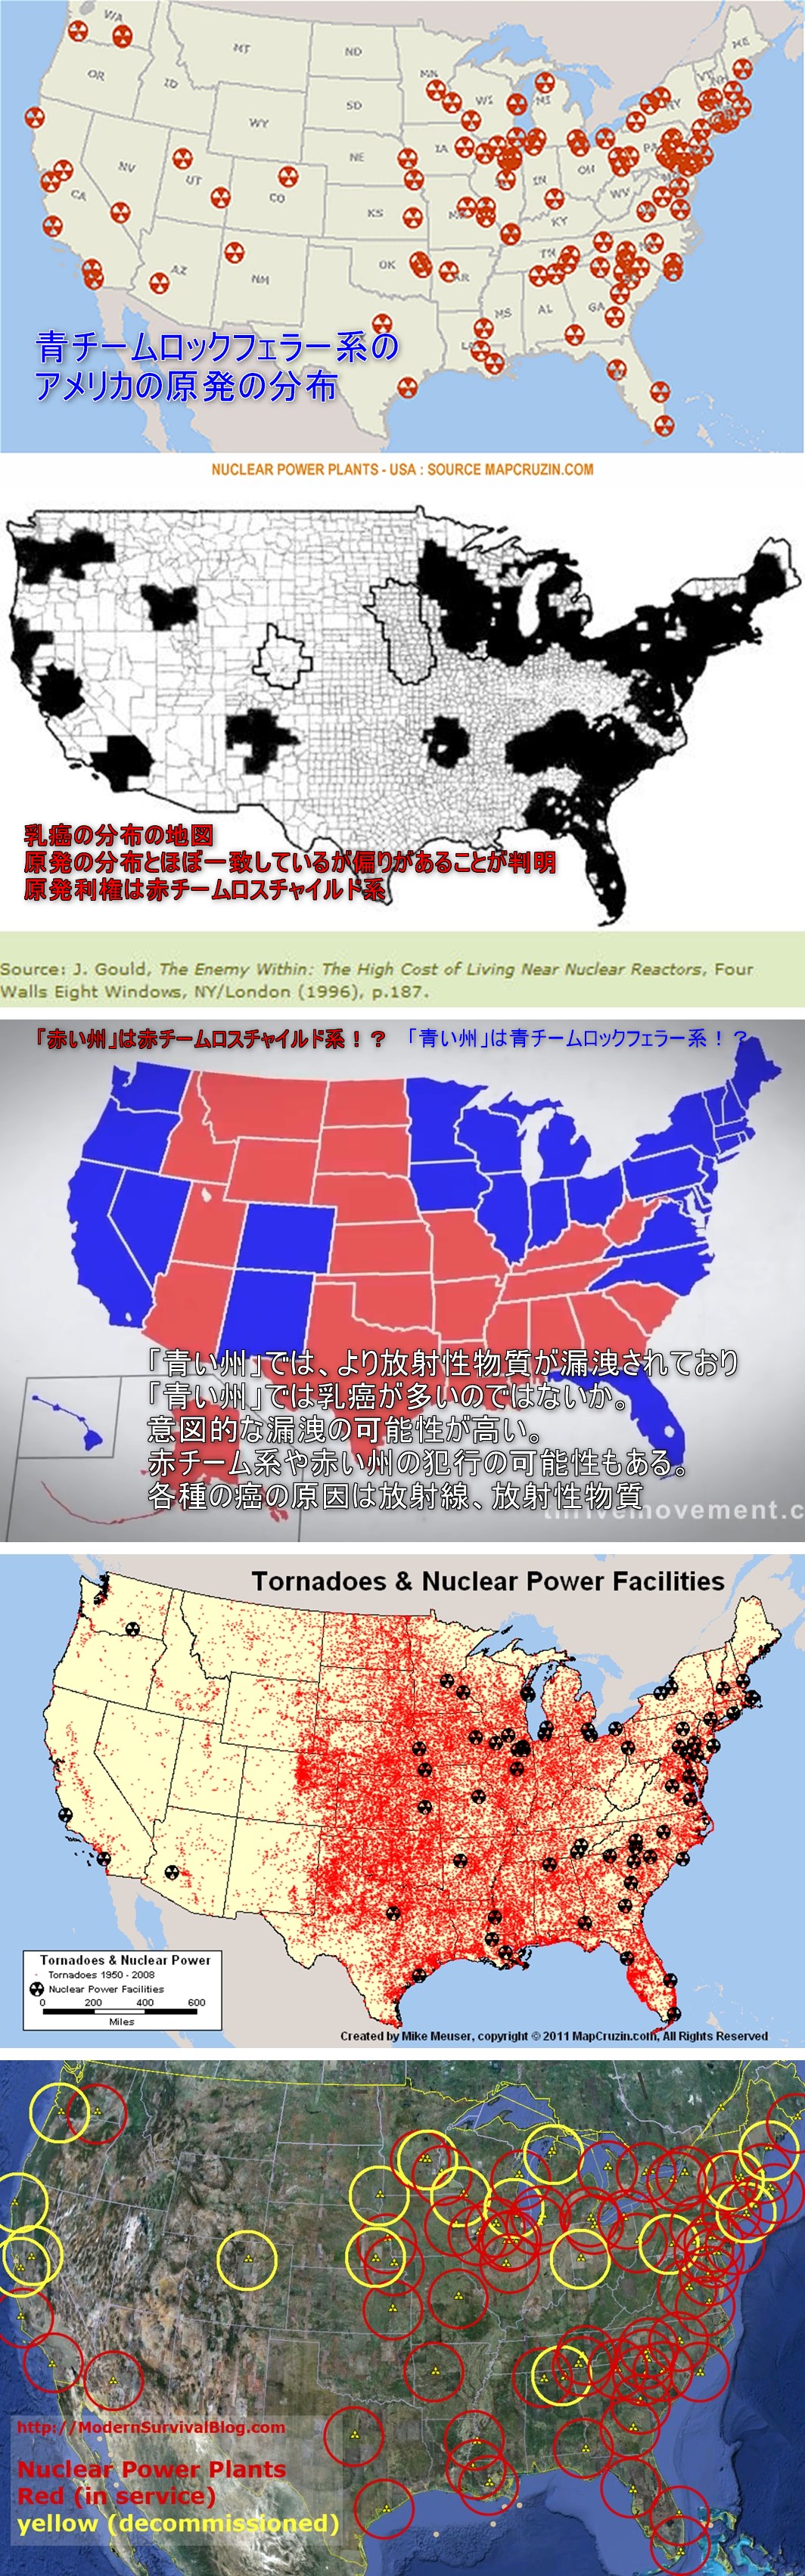 赤い州と青い州で青い州に乳癌が多い　乳癌と原発の分布はほぼ一致している　赤い州、赤チーム系の犯行か 追記